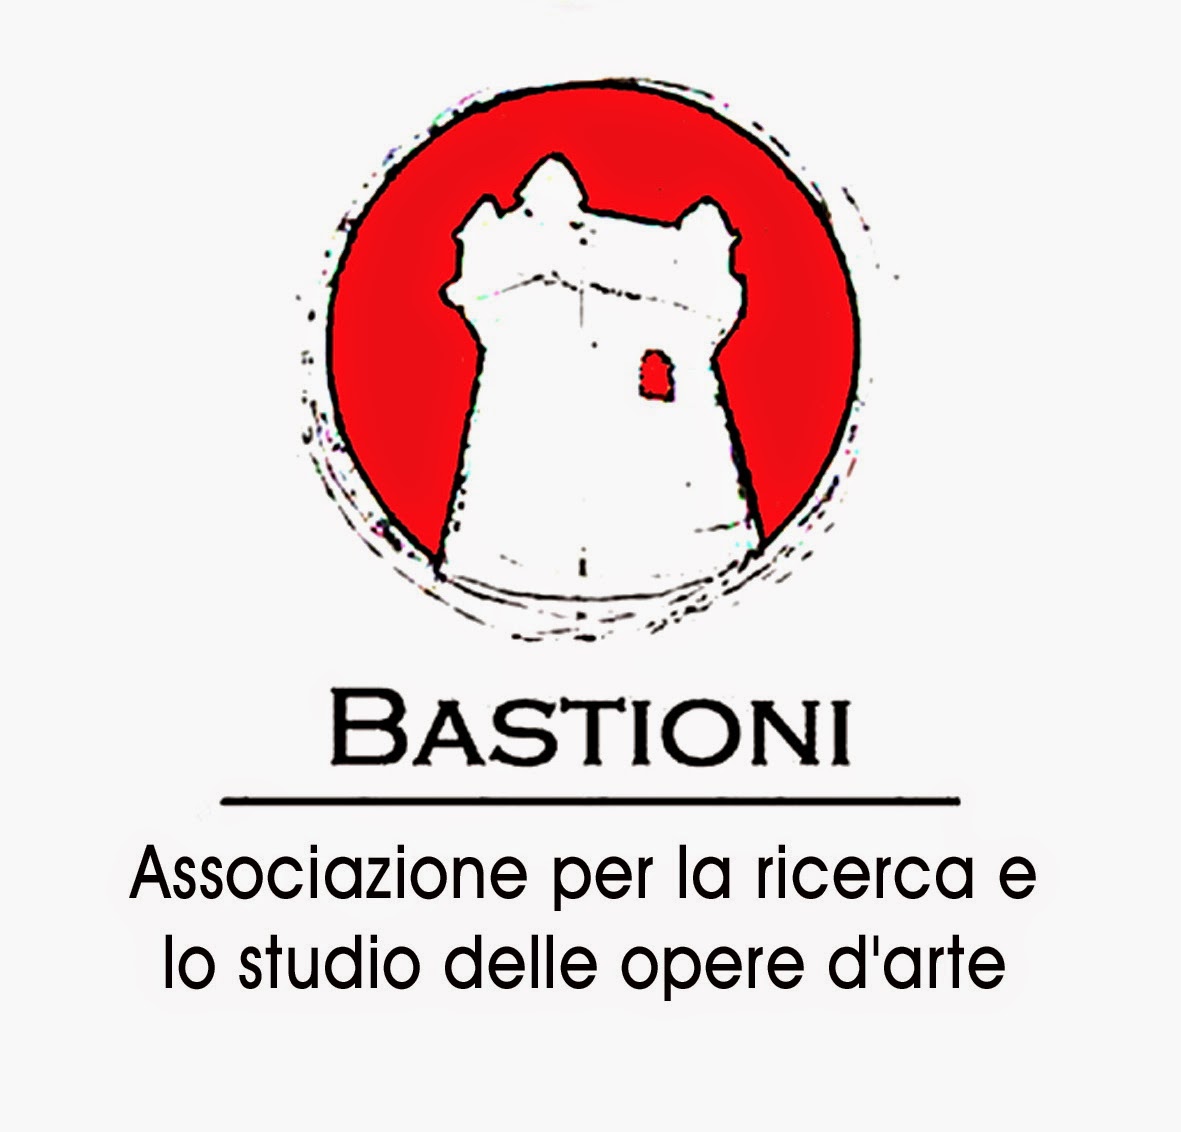 Bastioni